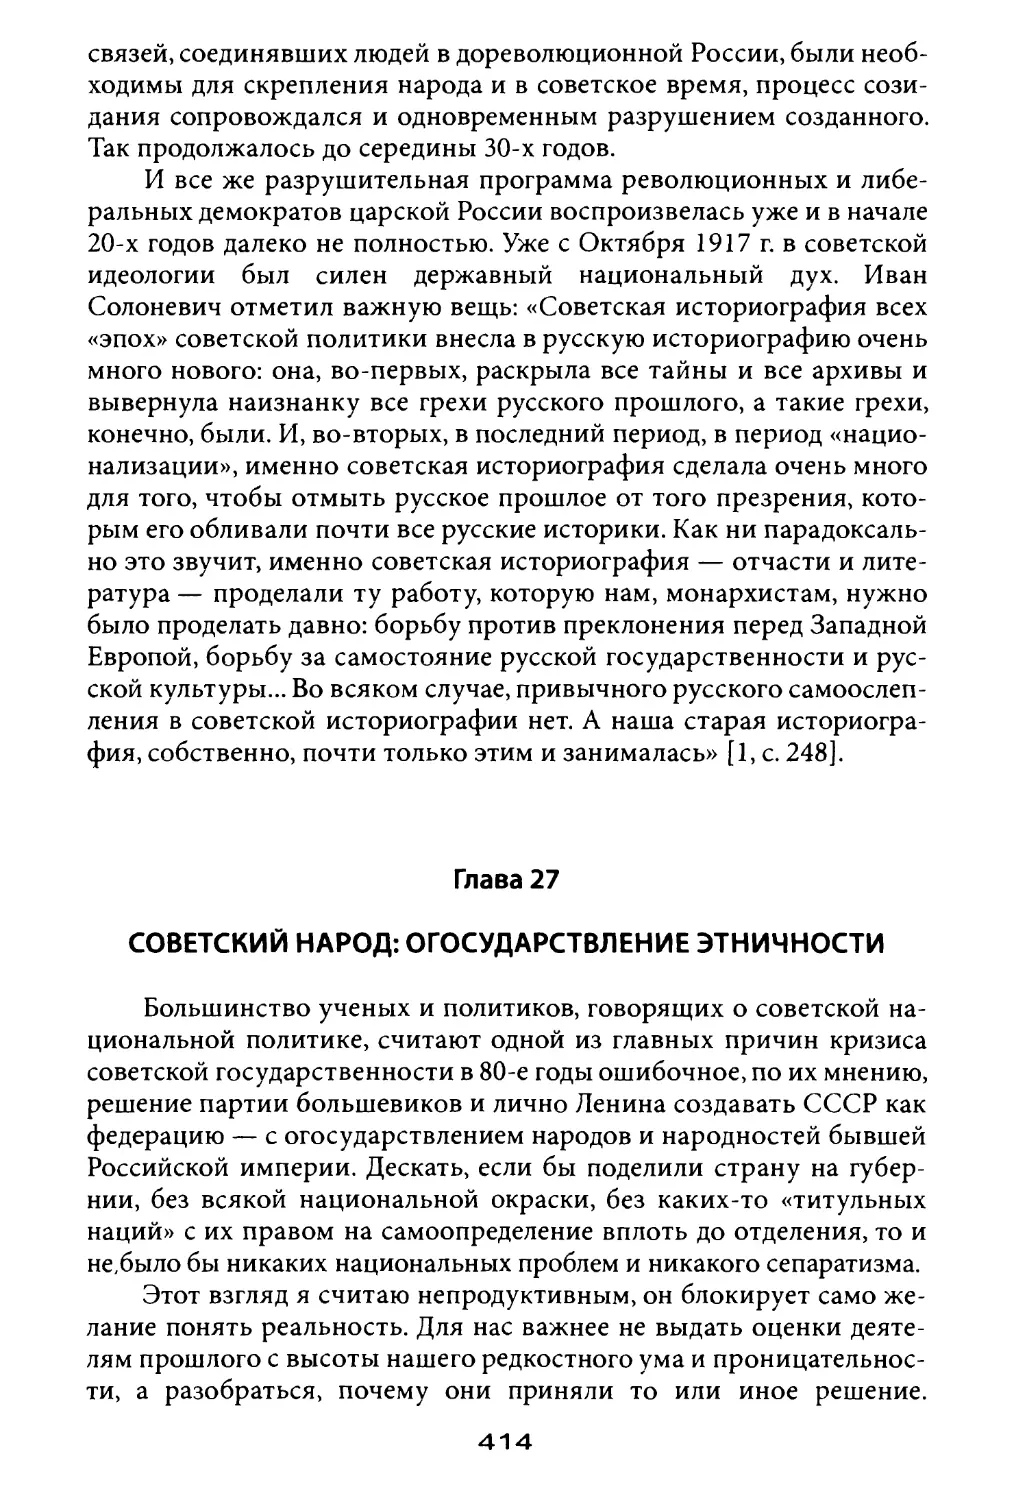 Глава 27. Советский народ: огосударствление этничности